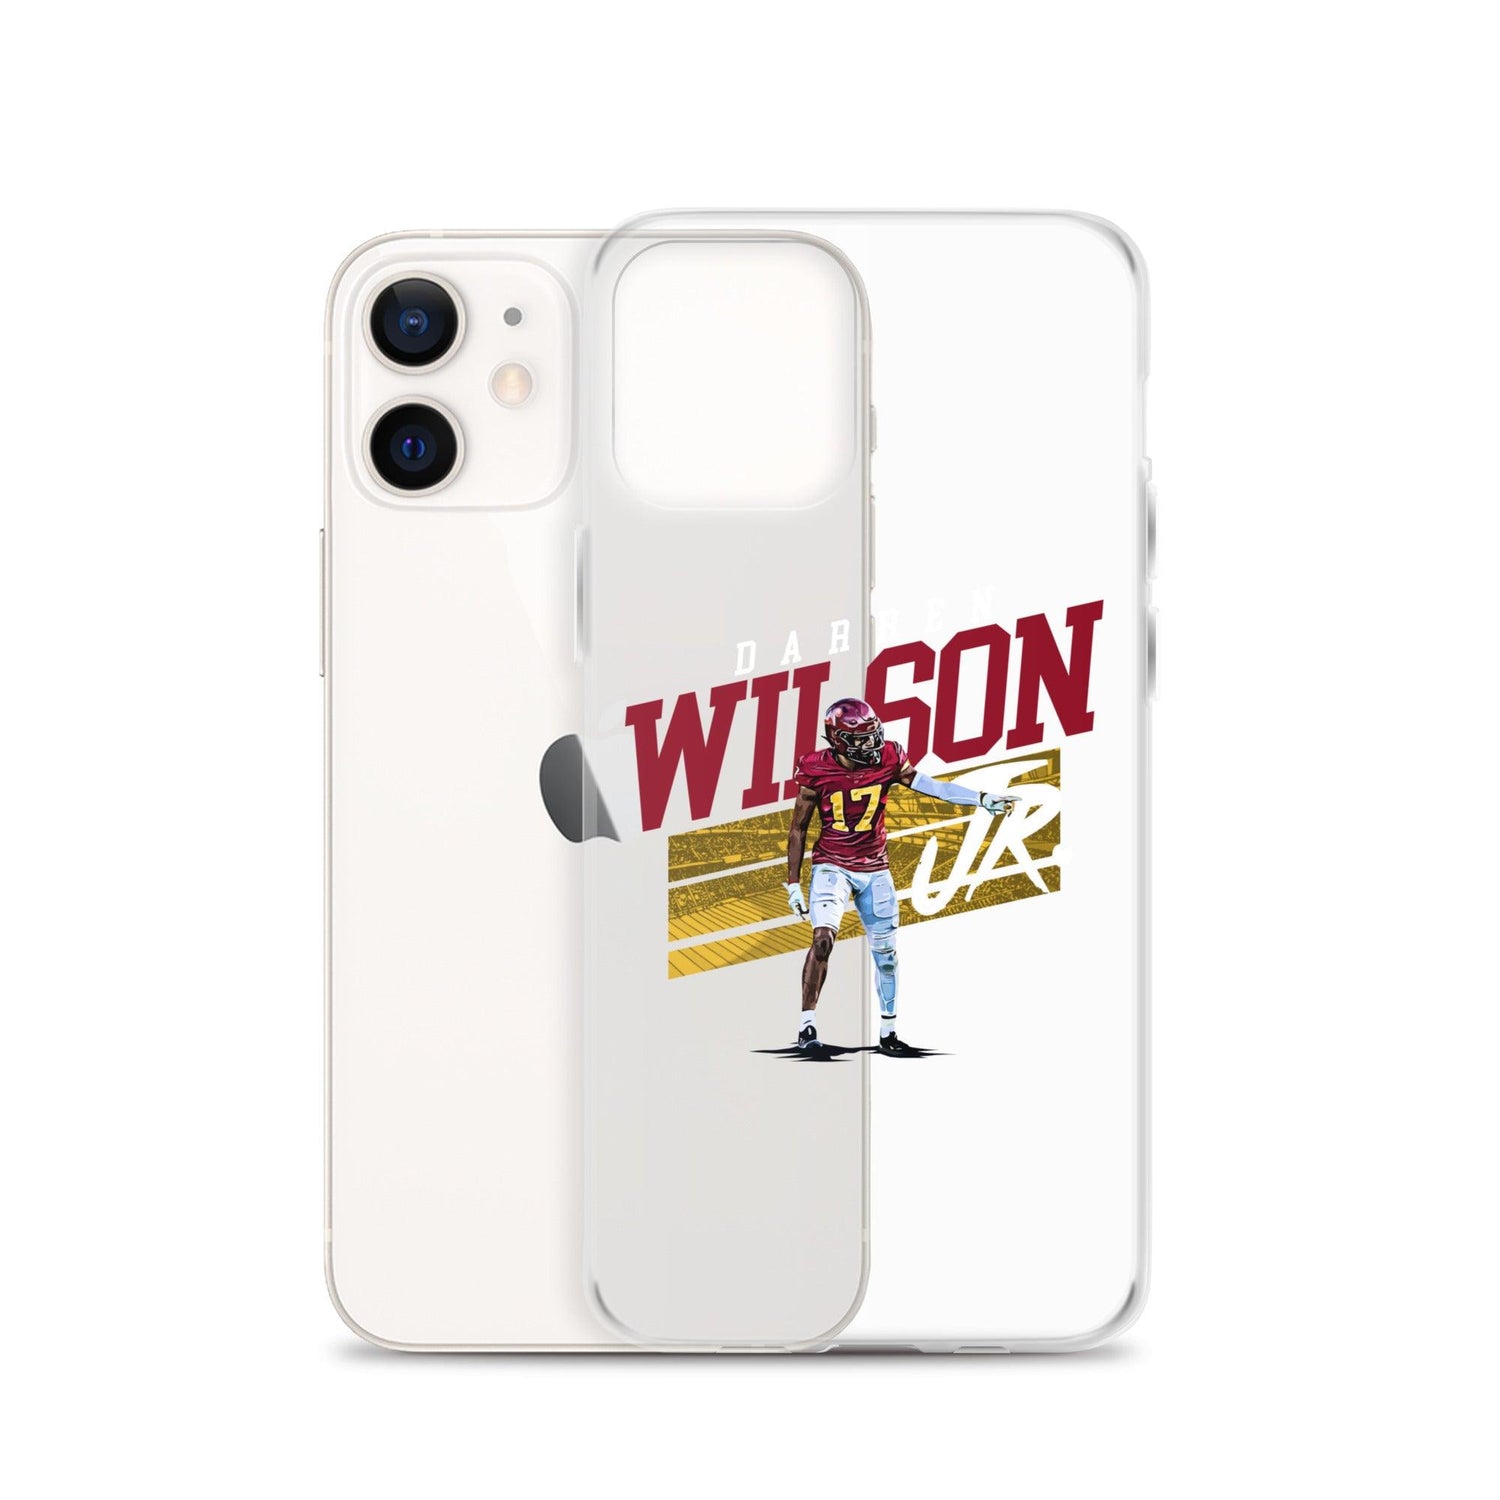 Darren Wilson Jr. "Gameday" iPhone Case - Fan Arch